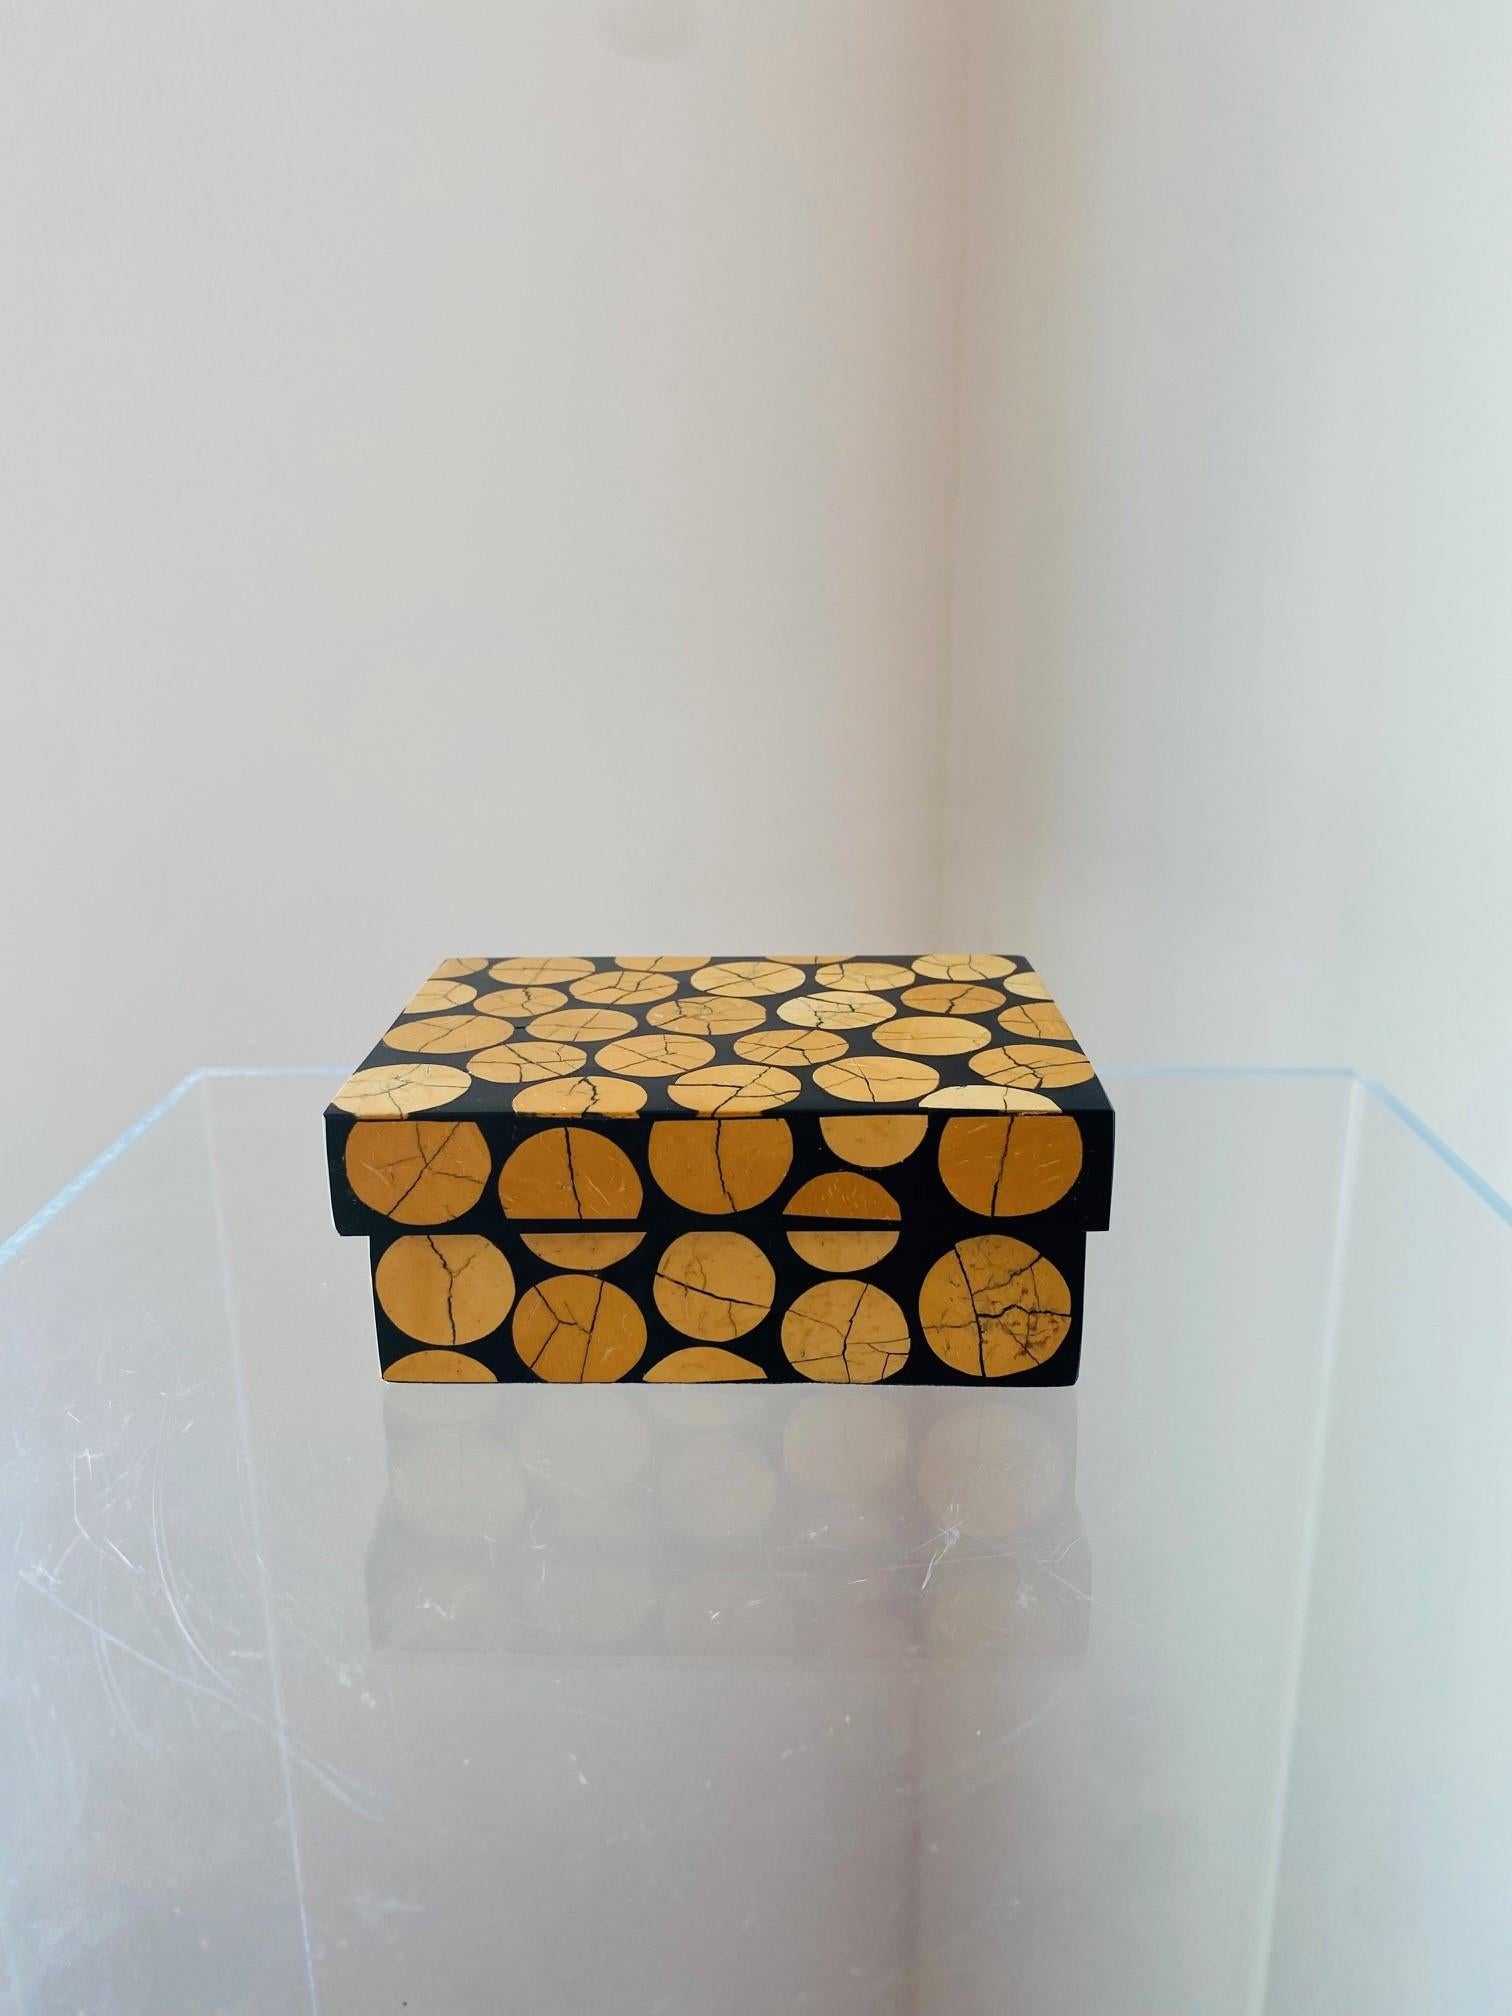 Schöne und minimalistische Schmuckschatulle von R Y Augousti. Diese seltene Schönheit ist ein einzigartiges Schmuckkästchen oder eine dekorative Schachtel, die minimale Form mit organischer Schönheit verbindet. Das aus lackierten Holzpaneelen